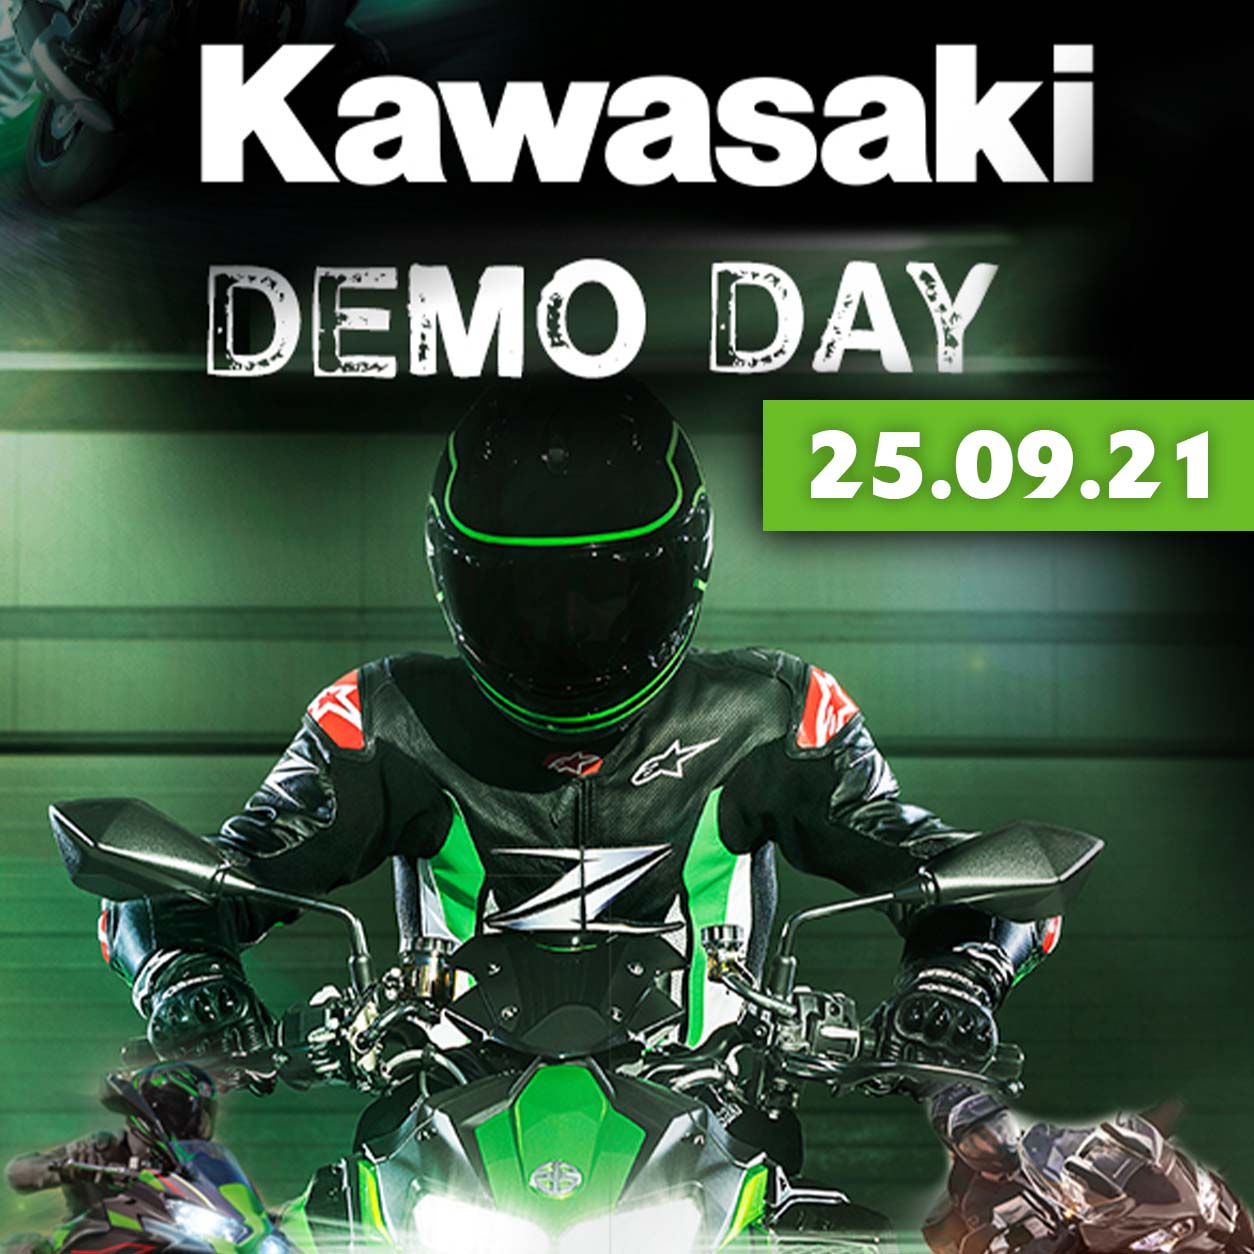 https://www.laguna.co.uk/kawasaki/event/kawasaki-demo-day-event-2021